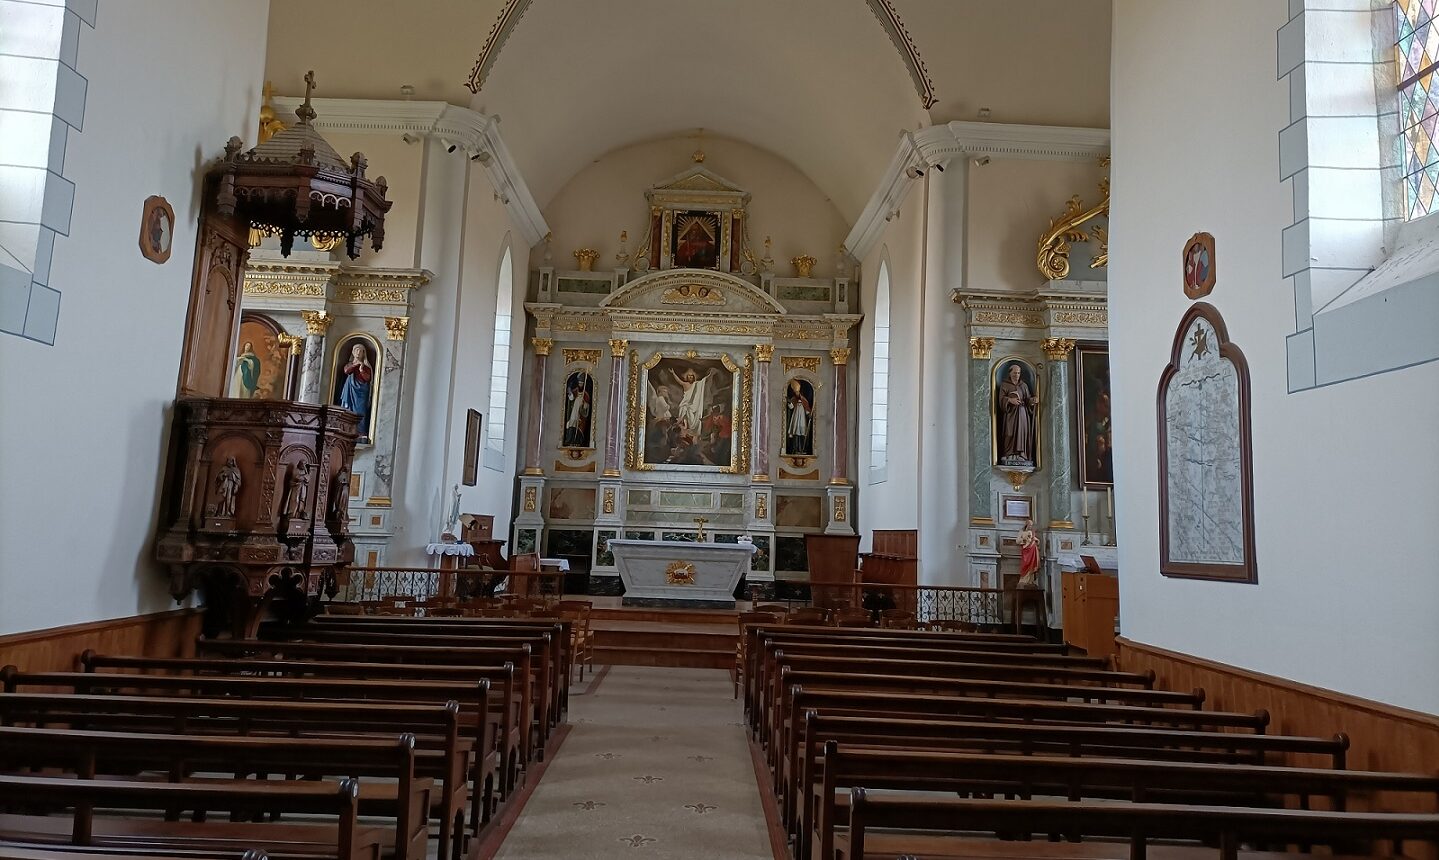 Kościół Saint Eloi w Comblessac; obraz podarowany przez polskich żołnierzy wisi na lewo od ołtarza, fot. dzięki uprzejmości p. Christophe'a Ricauda,
mera Comblessac